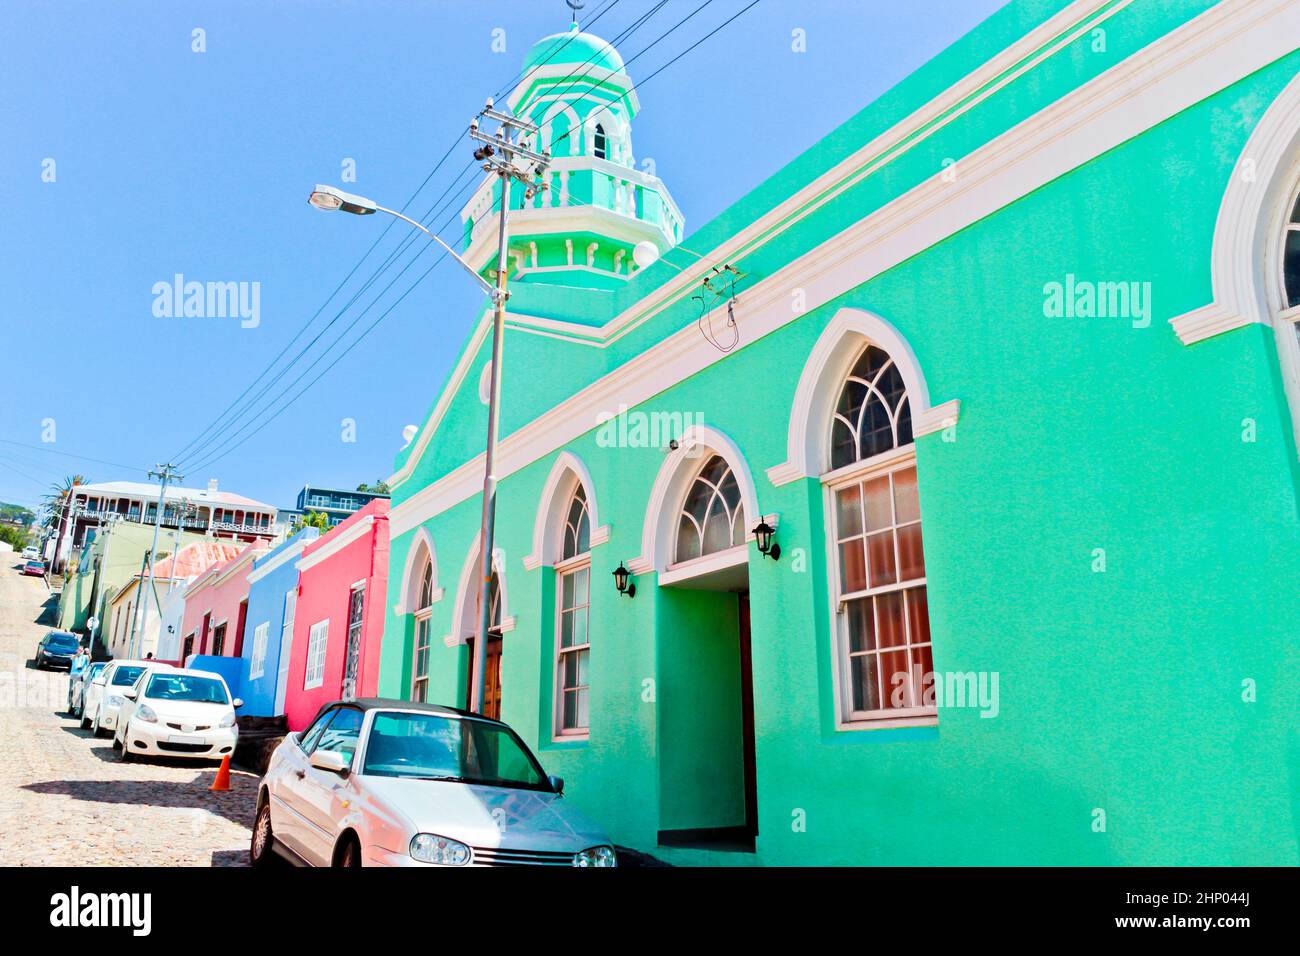 De nombreuses maisons colorées dans le quartier Bo Kaap à Cape Town, Afrique du Sud. Banque D'Images